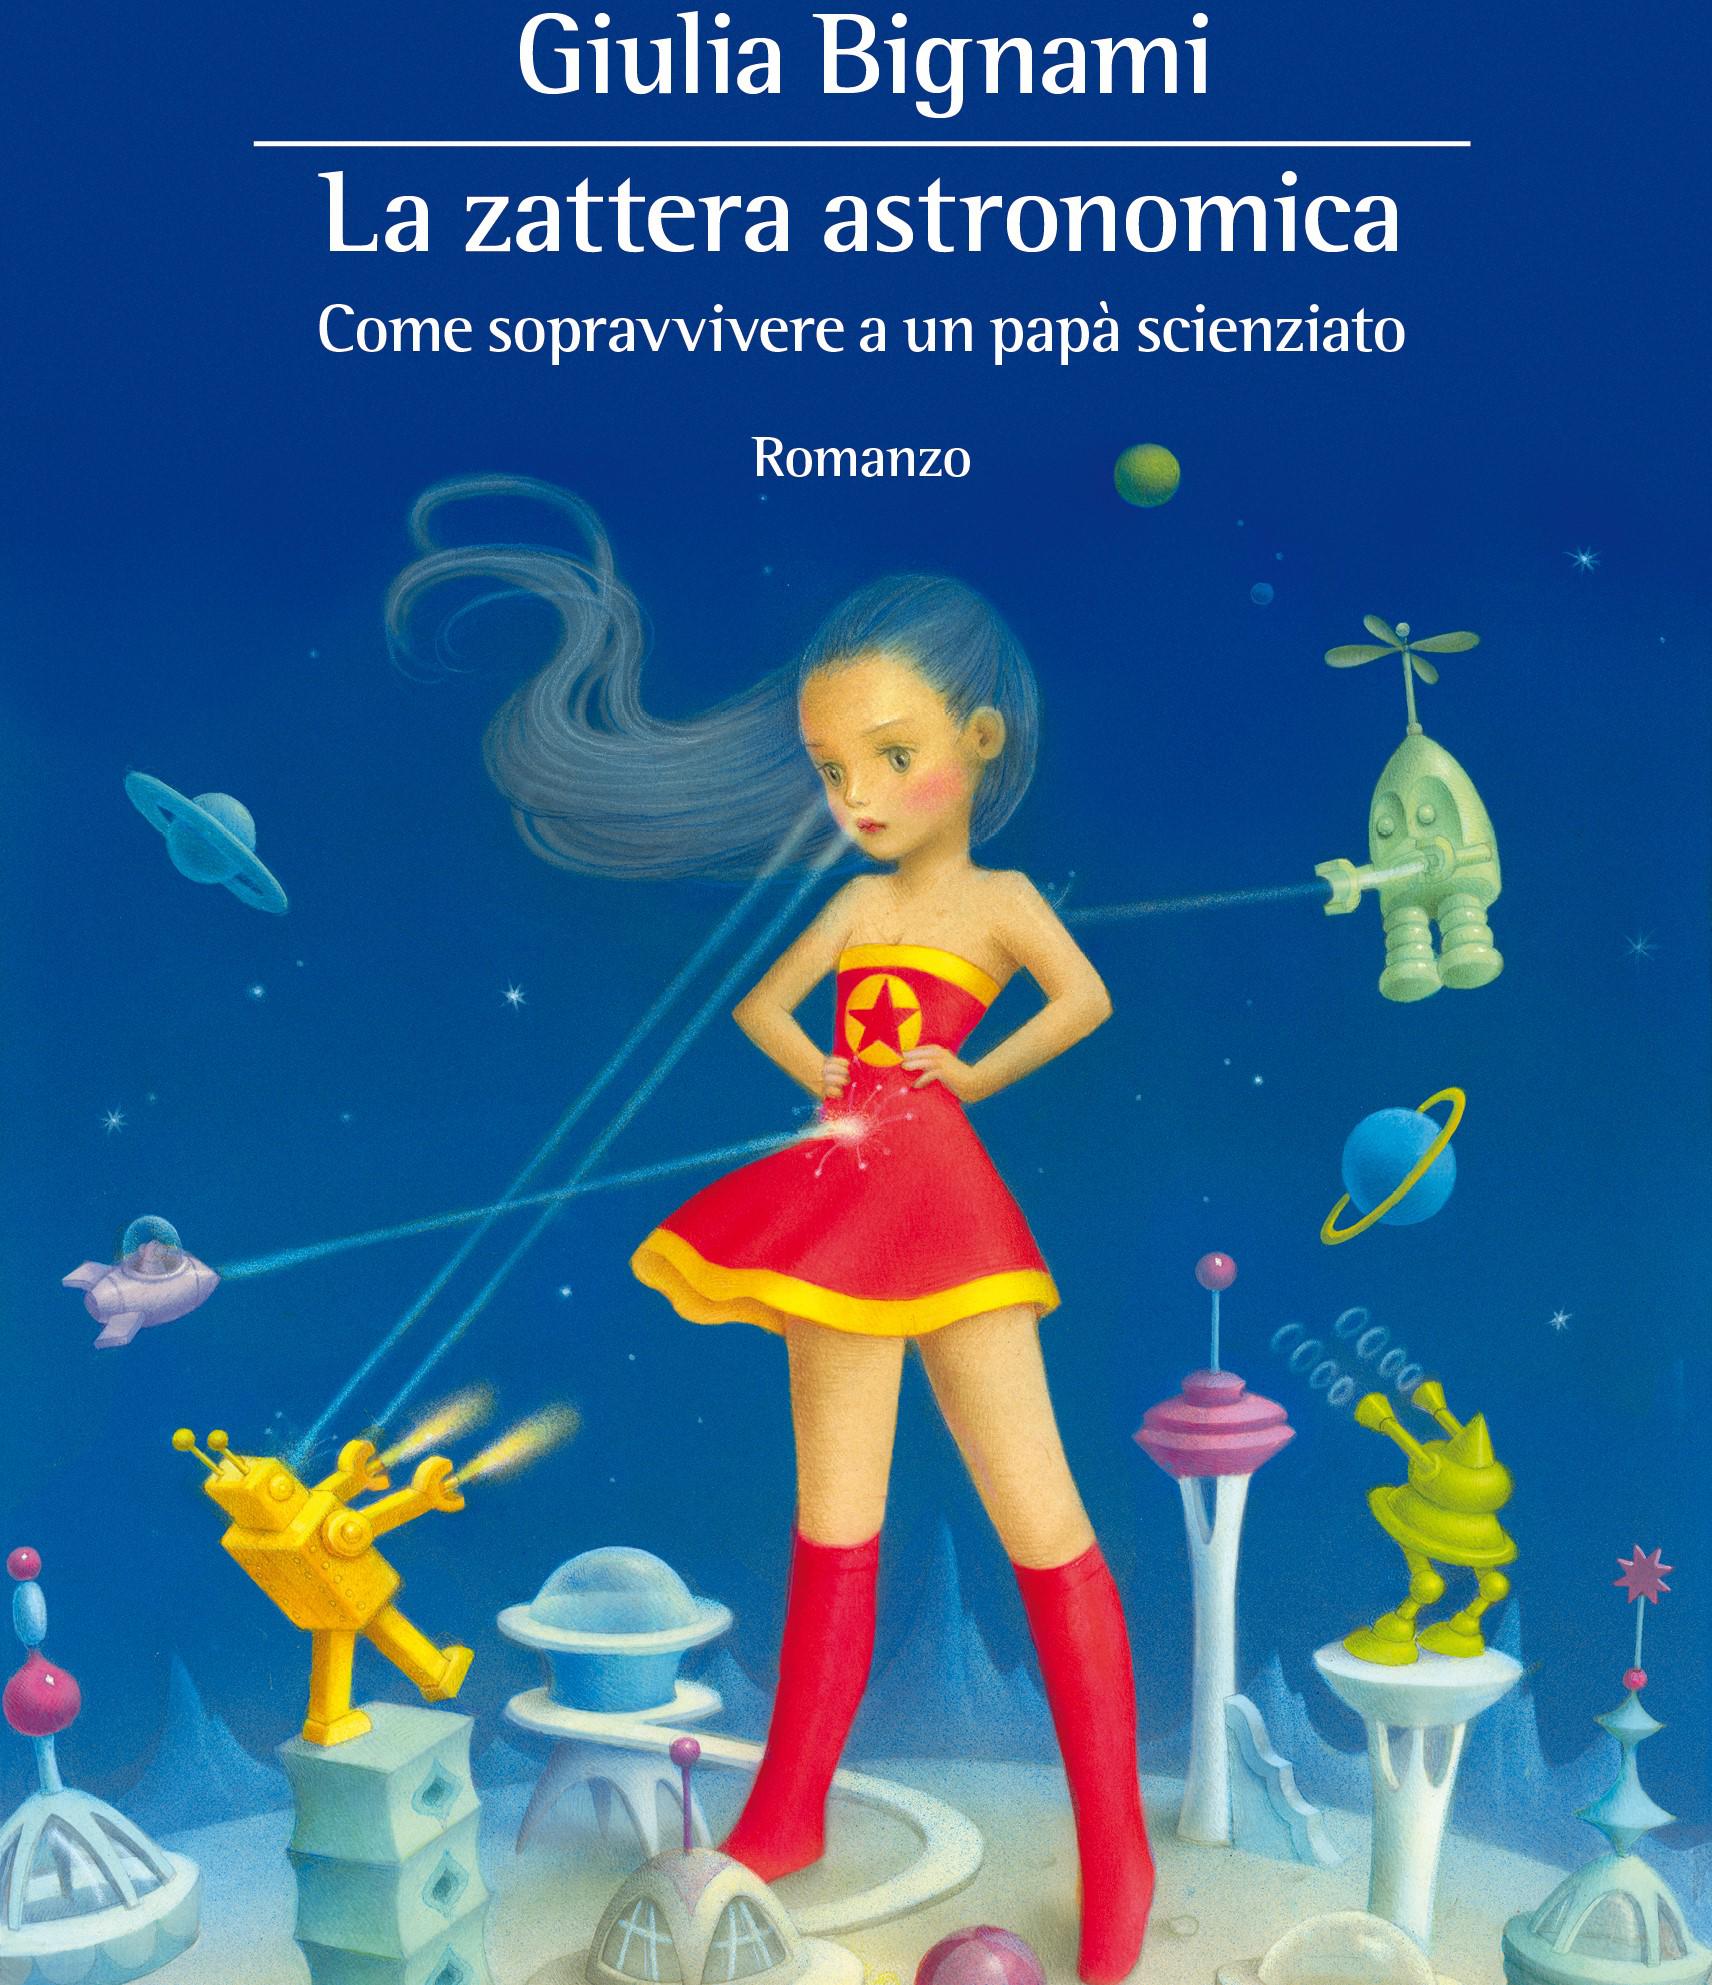 Interviste: Giulia Bignami - La zattera astronomica (07-04-21)